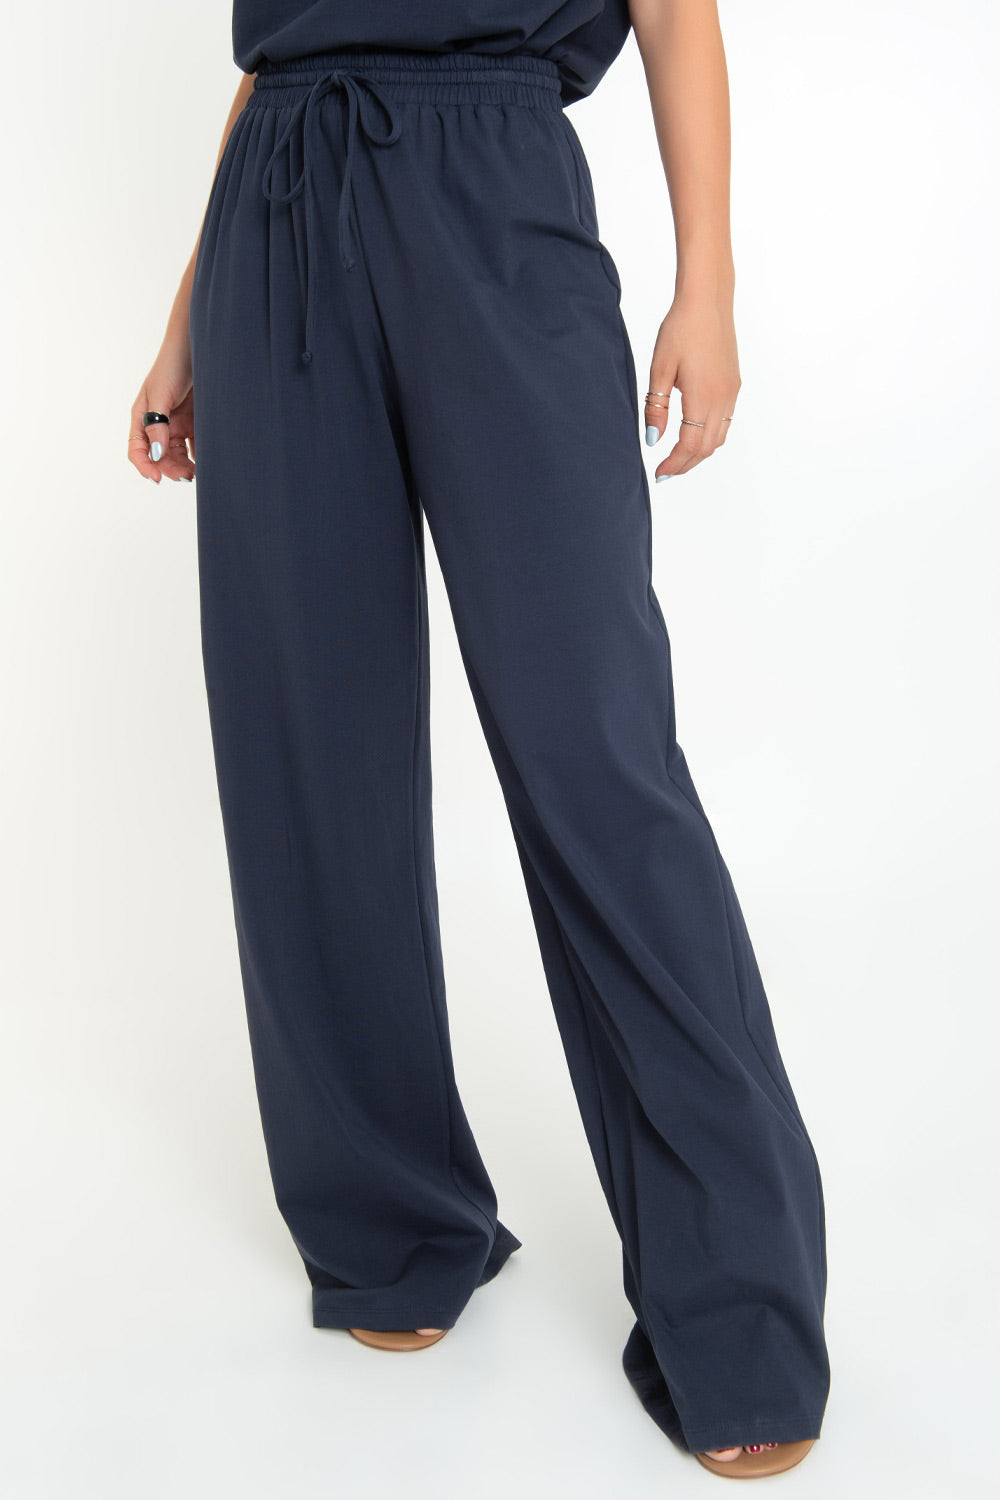 Pantalón de fit wide leg, cintura alta con pretina elástica y jareta frontal ajustable.